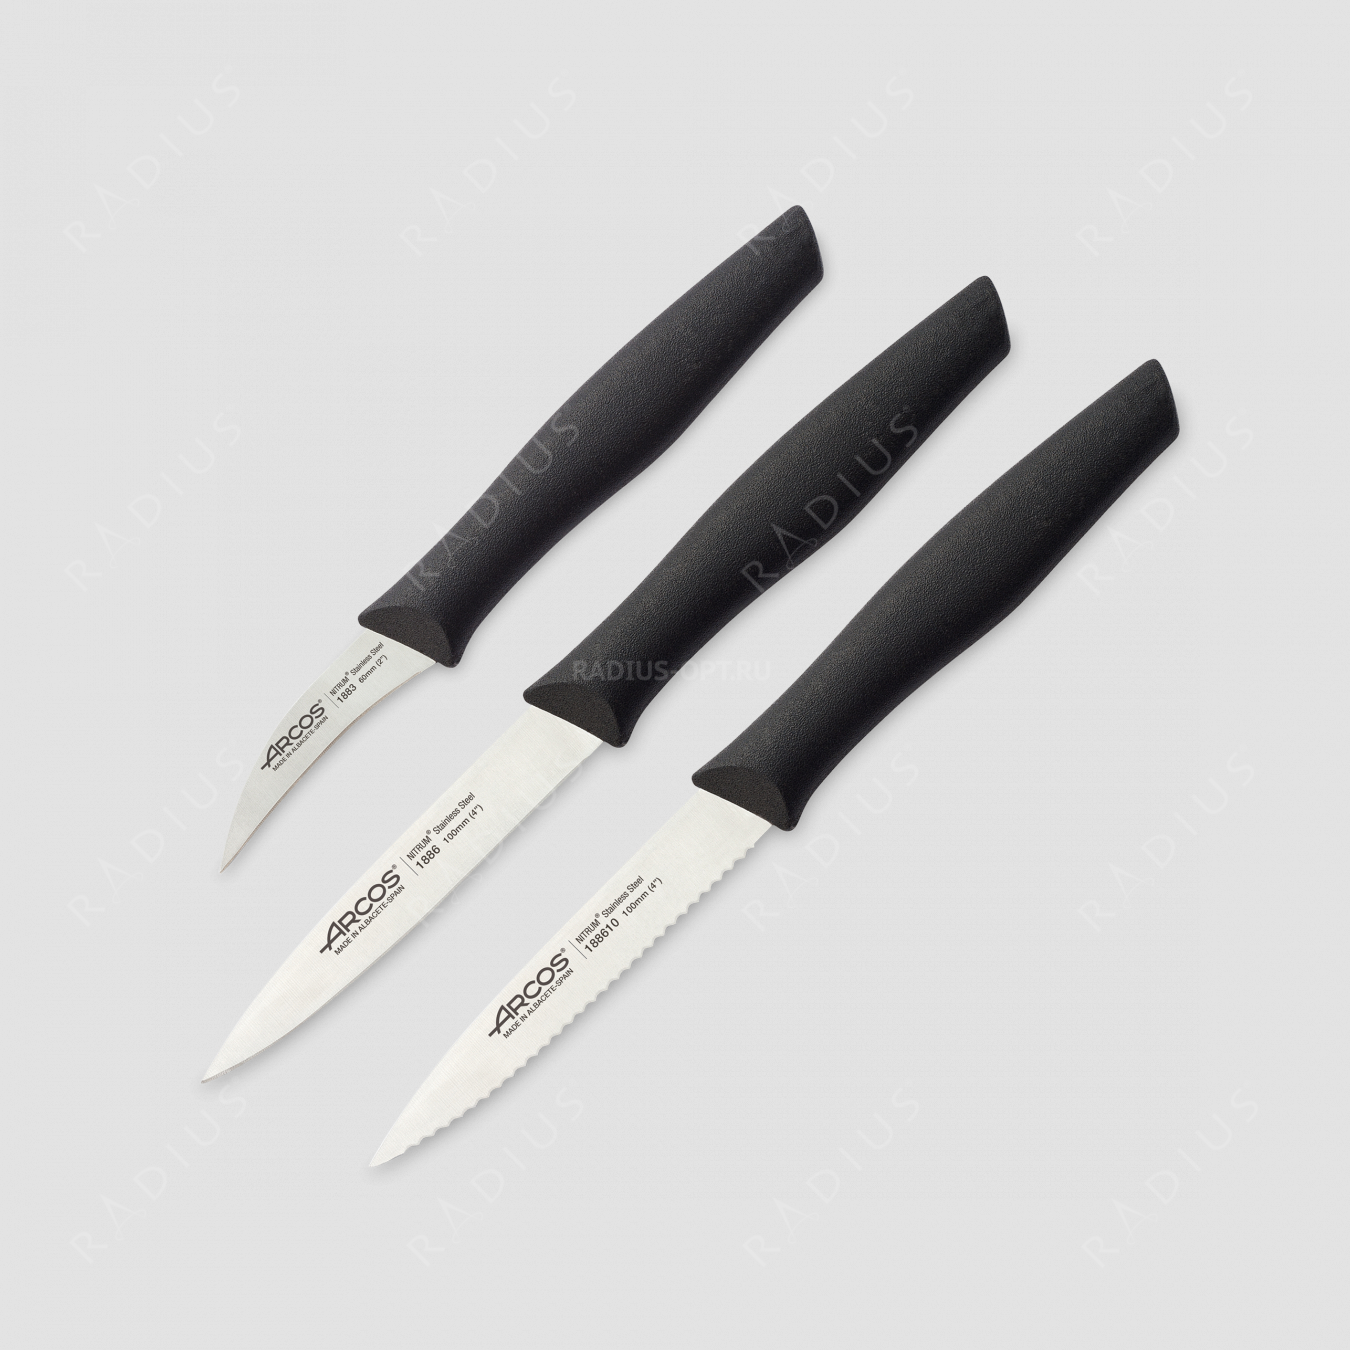 Набор из 3-х кухонных ножей для чистки и нарезки овощей, рукоять черная, серия Nova, ARCOS, Испания